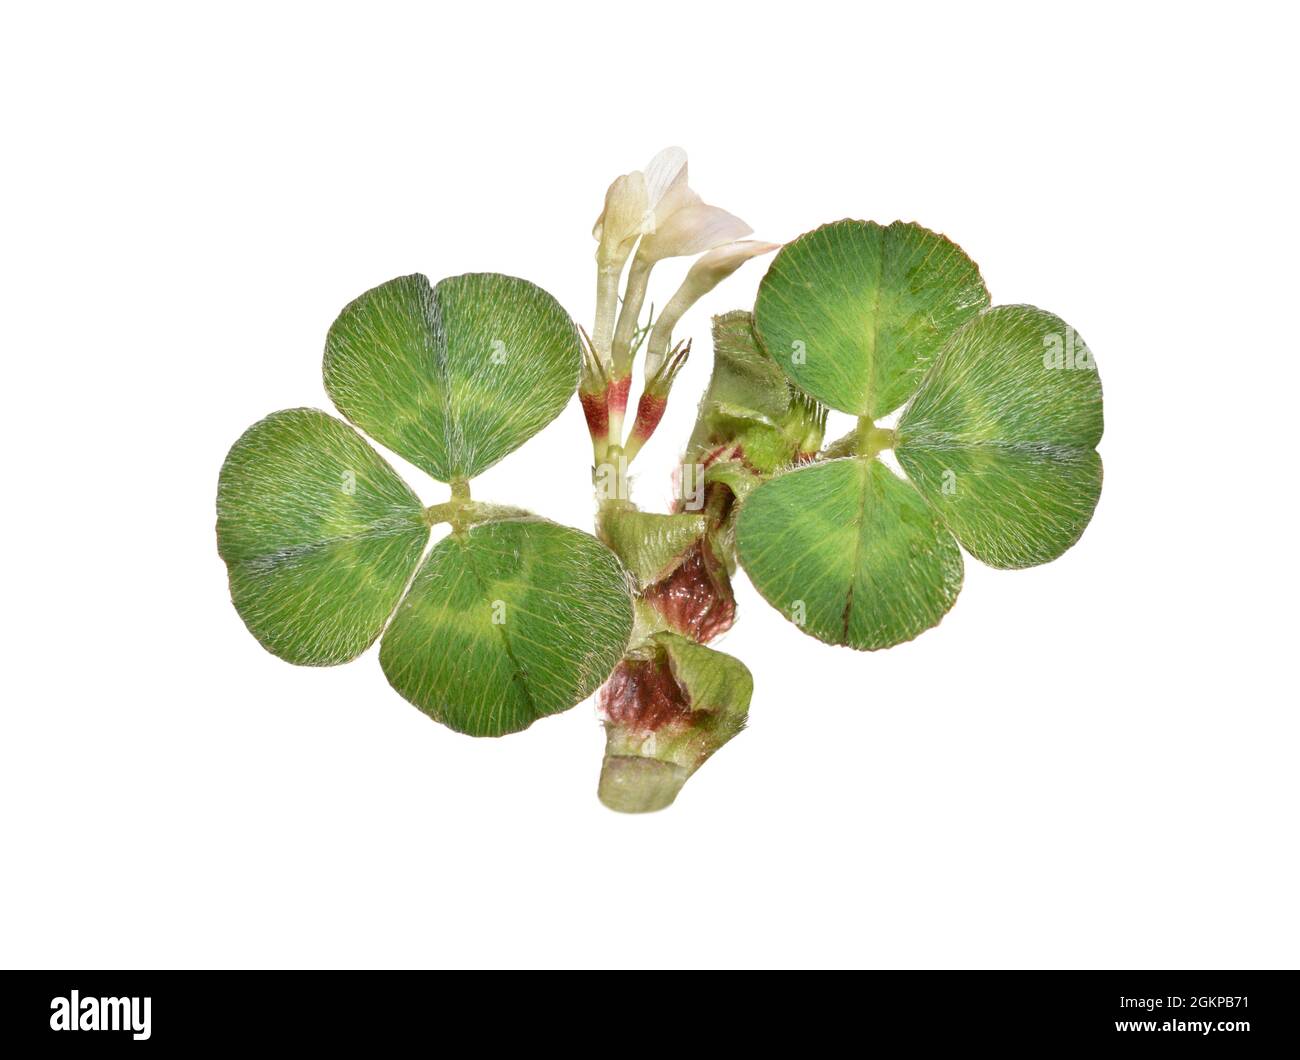 Subterranean Clover - Trifolium subterraneum Stock Photo